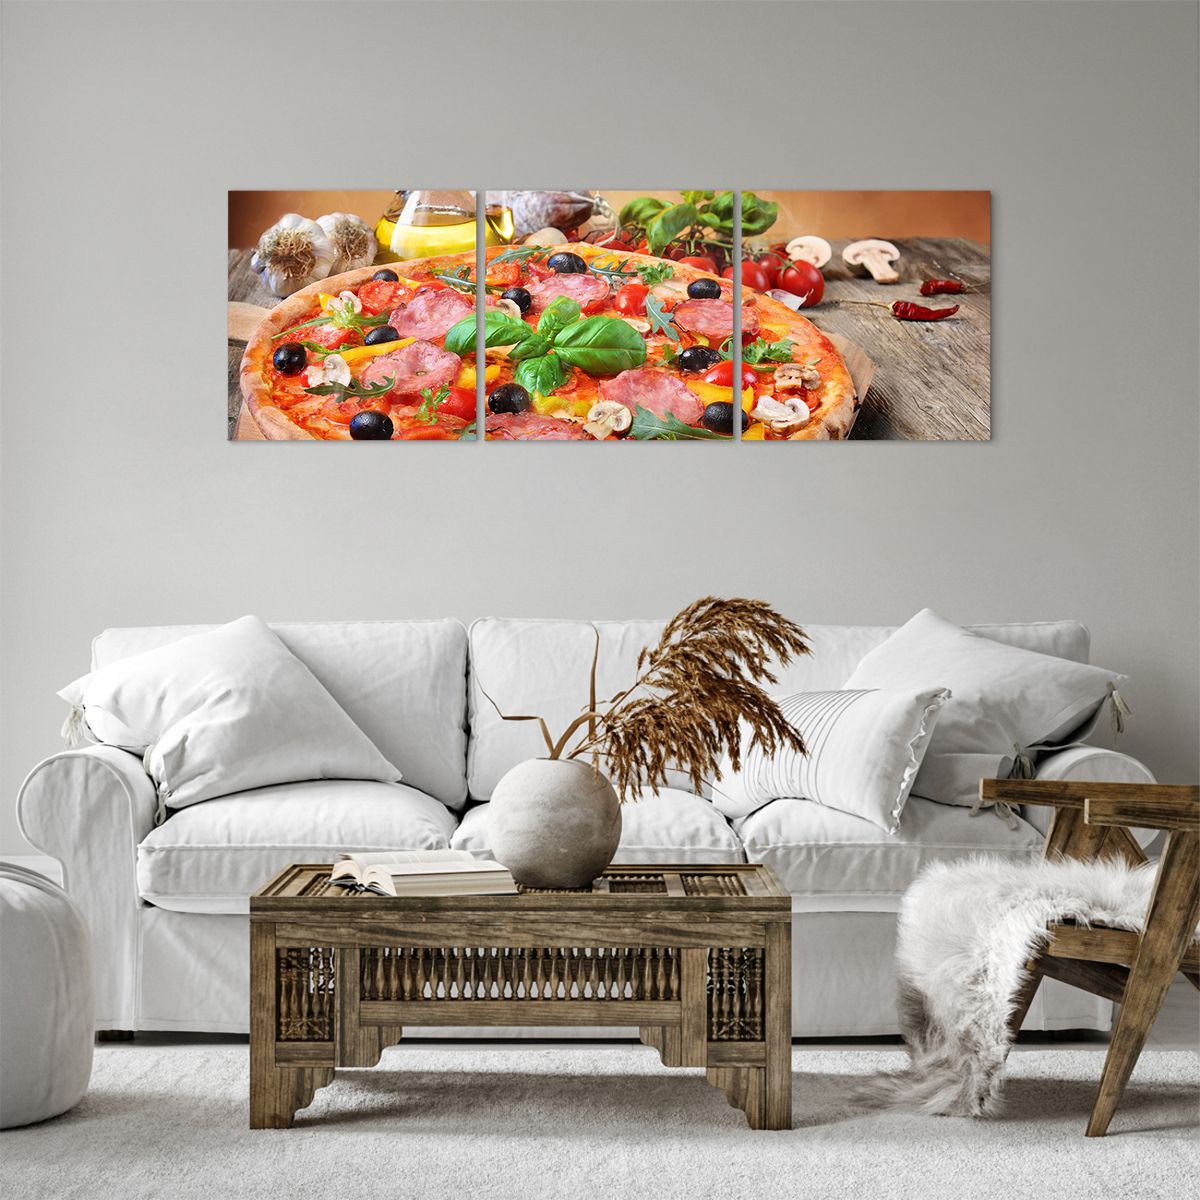 Bild auf Leinwand Gastronomie, Bild auf Leinwand Pizza, Bild auf Leinwand Italien, Bild auf Leinwand Küche, Bild auf Leinwand Öl